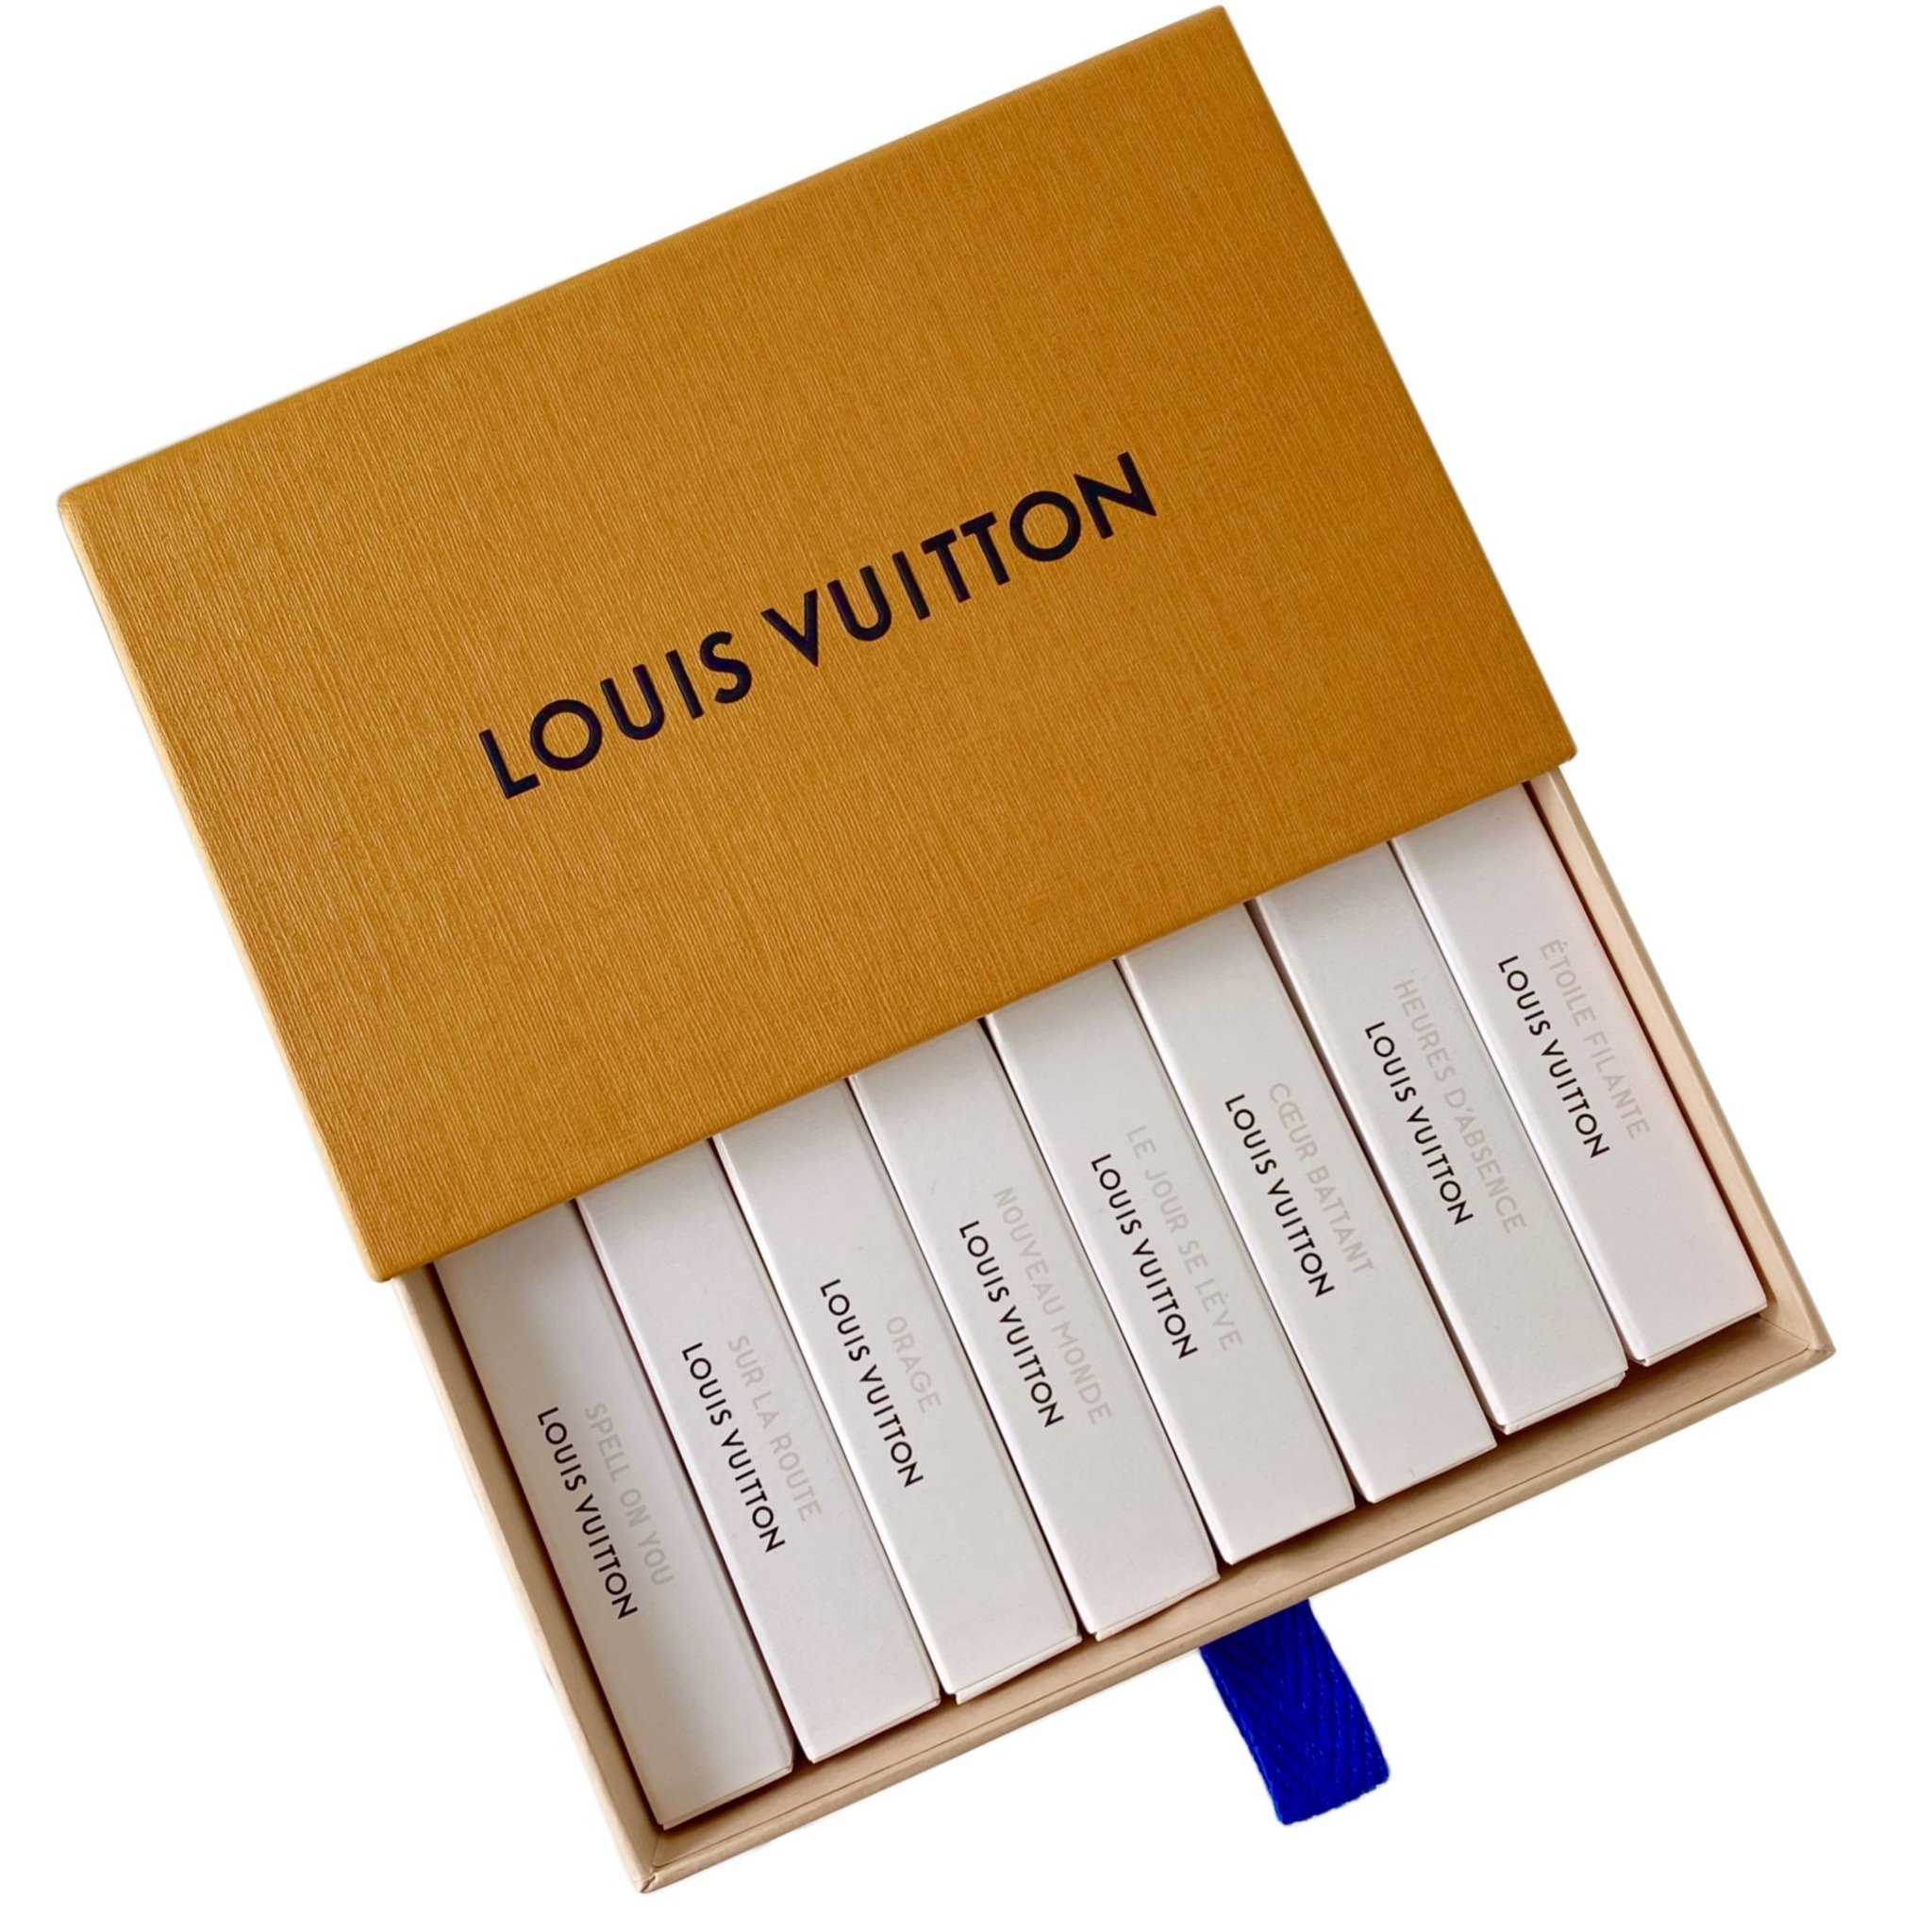 Louis Vuitton LE JOUR SE LEVE EAU DE PARFUM 200ml Beauty  Personal Care  Fragrance  Deodorants on Carousell